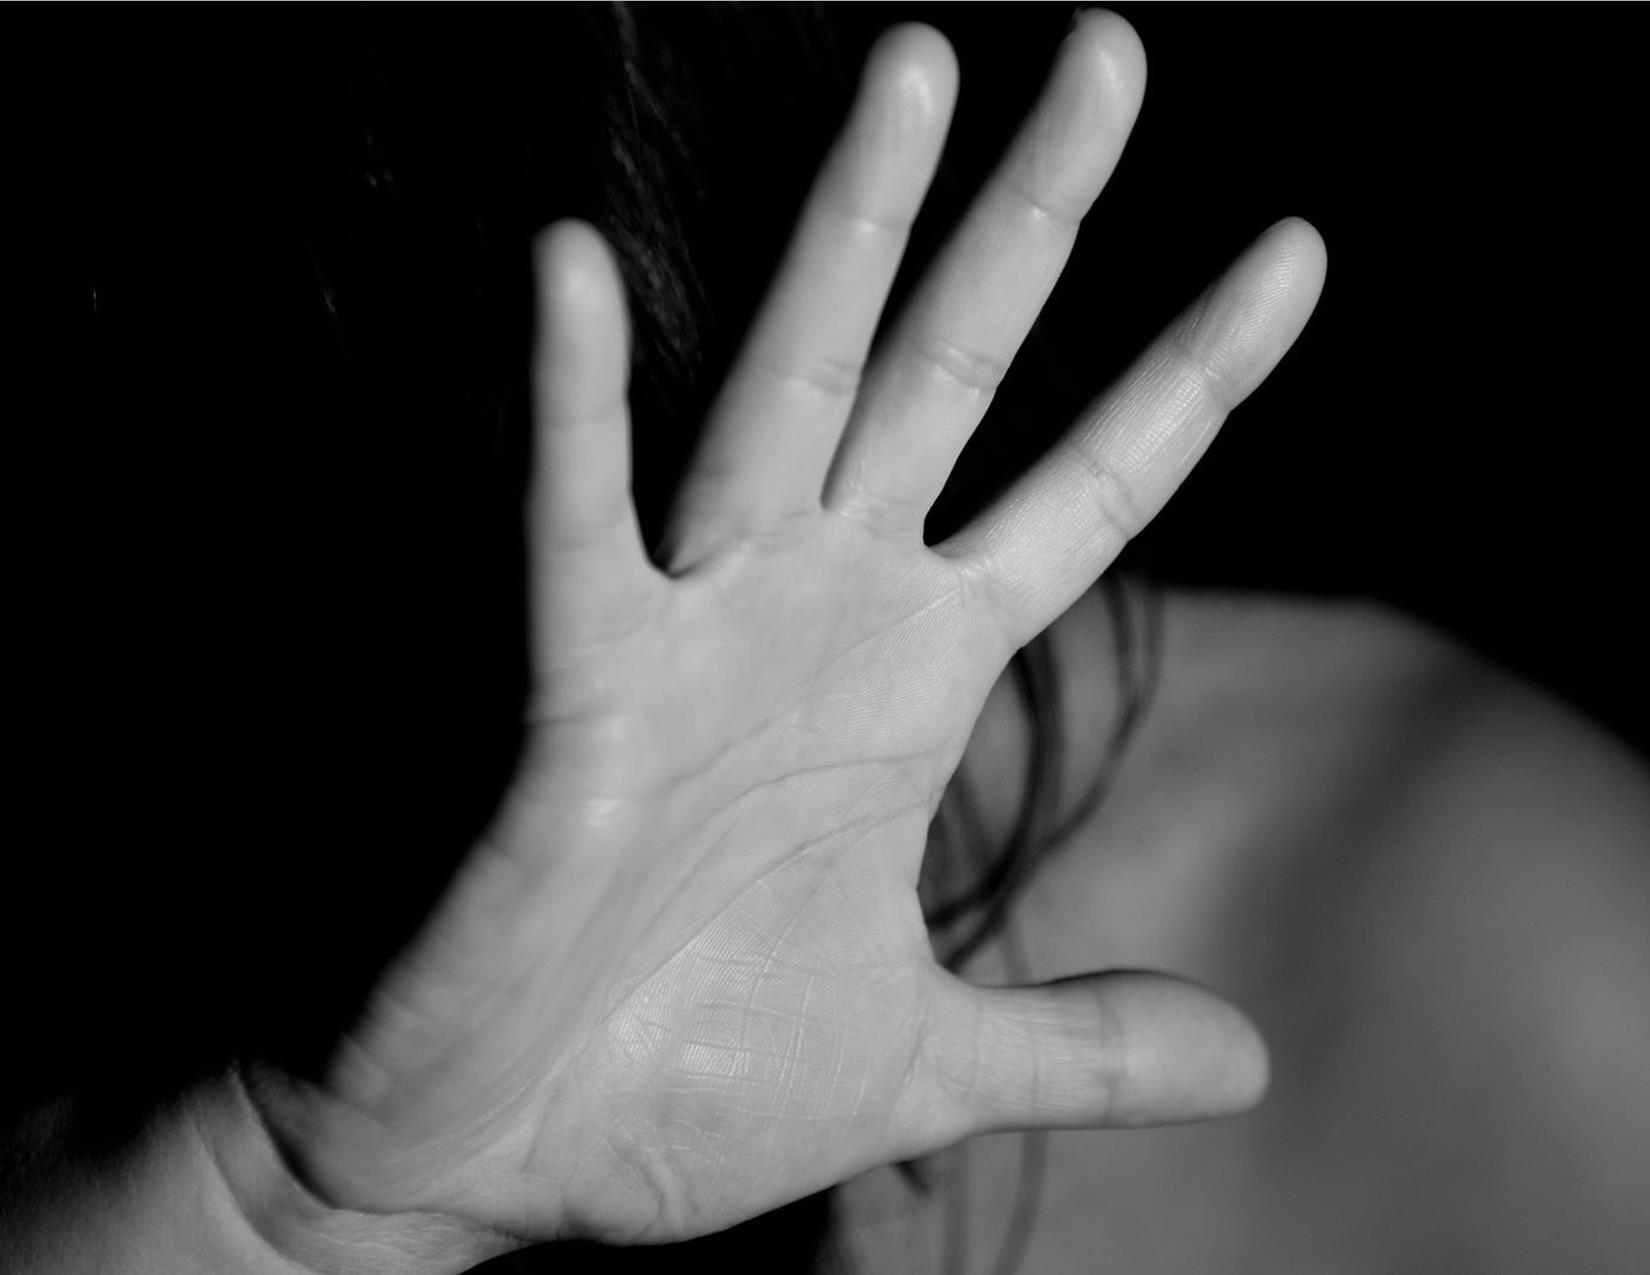 Kementerian PPPA Beri Tanggapan Terkait Tuntutan 7 Bulan Penjara Terhadap Terdakwa Pemerkosaan di Lahat Sumsel